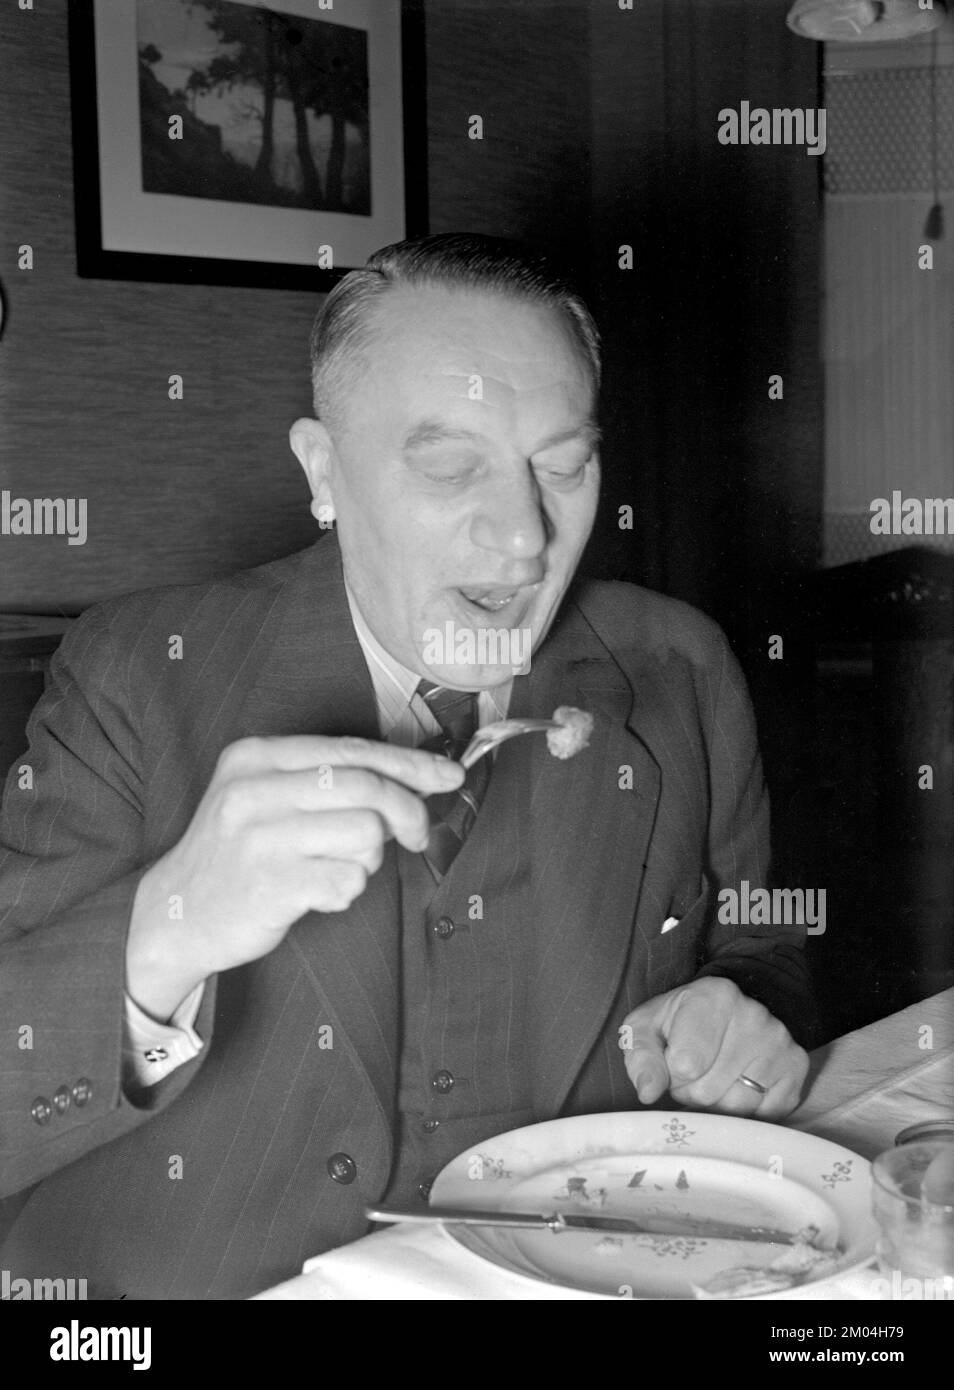 À noël en 1940s. Un homme a un dîner de noël et a un meatball sur sa fourchette prêt à manger. Suède décembre 1940 Kristoffersson 42-10 Banque D'Images